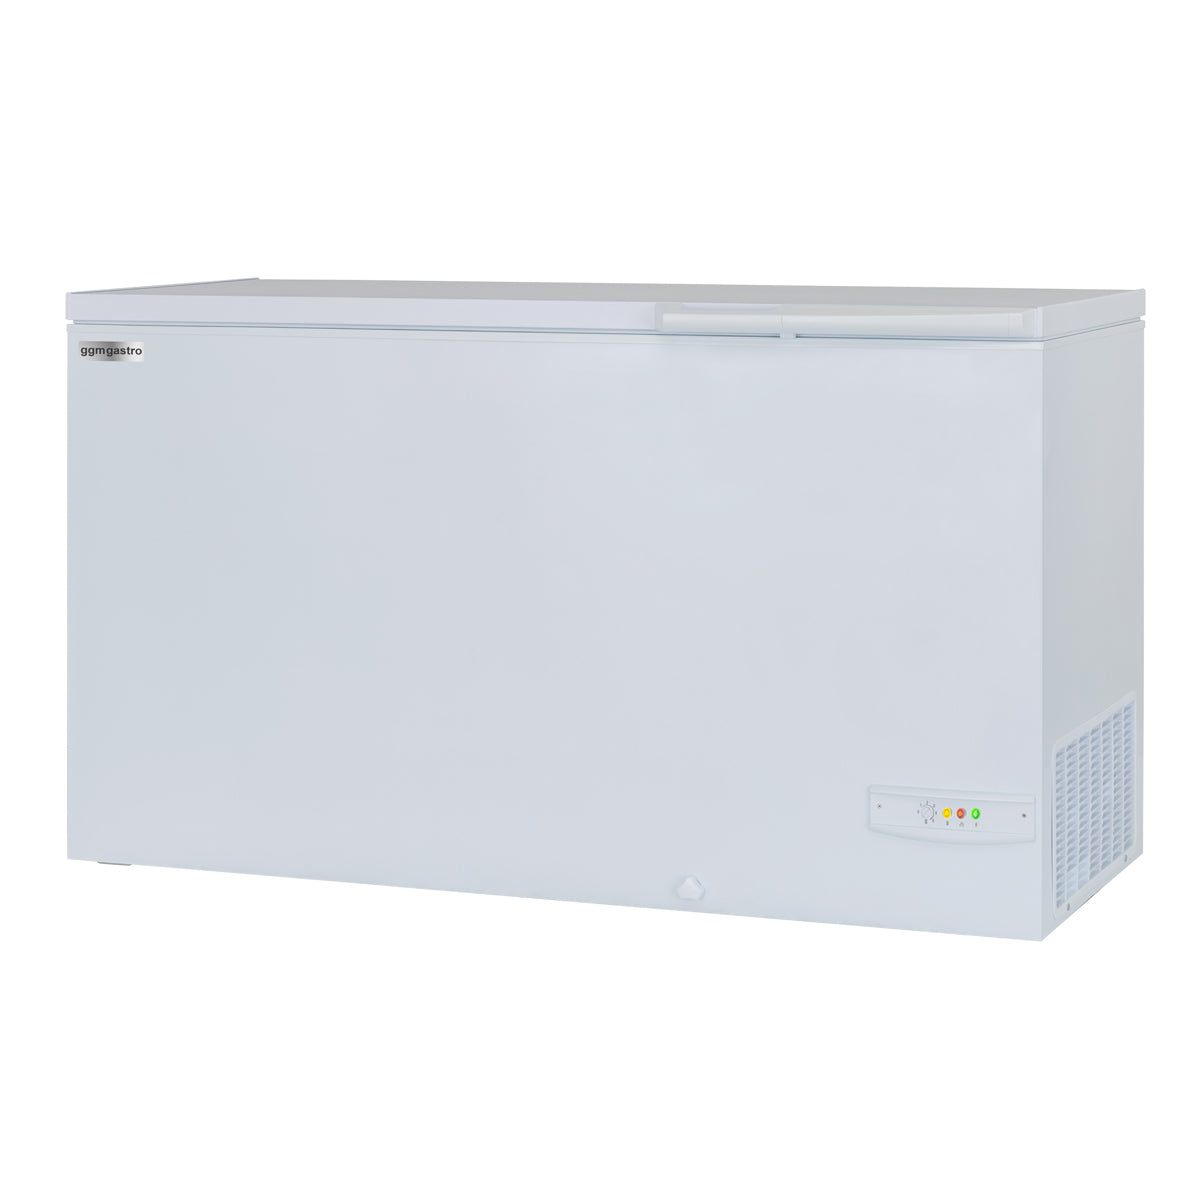 Kummefryser - 388 liter (nettoindhold) - hvid